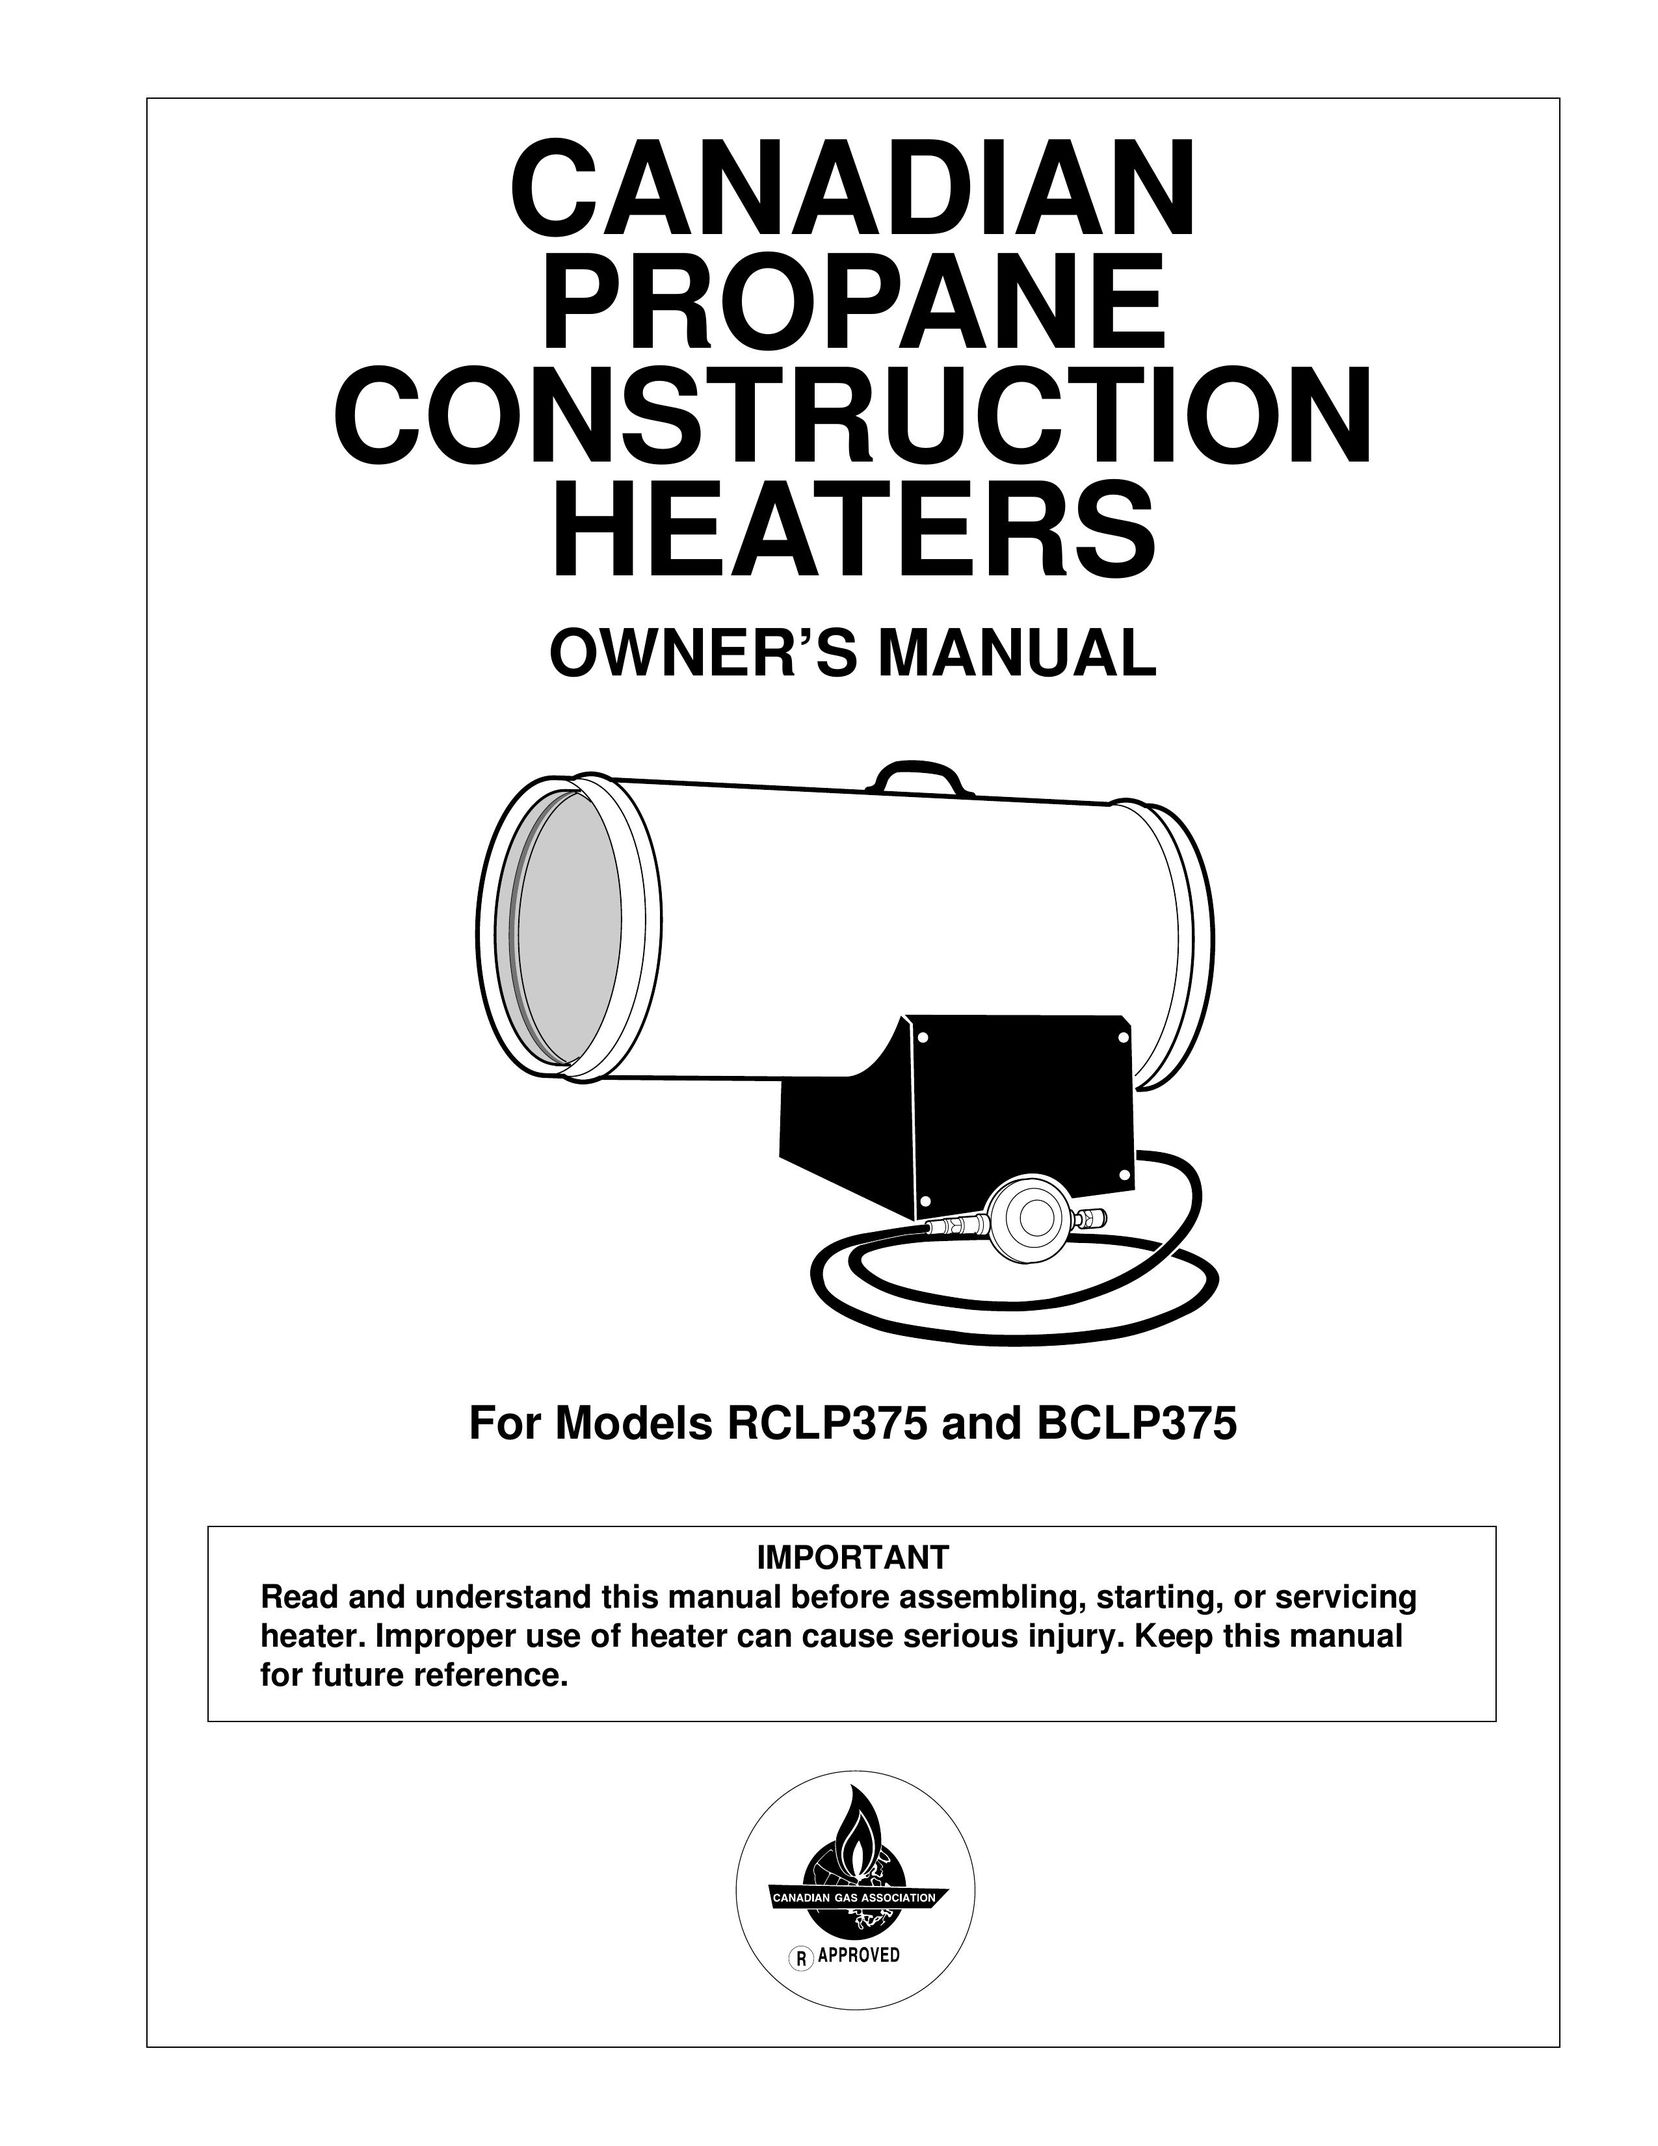 Desa BCLP375 Gas Heater User Manual